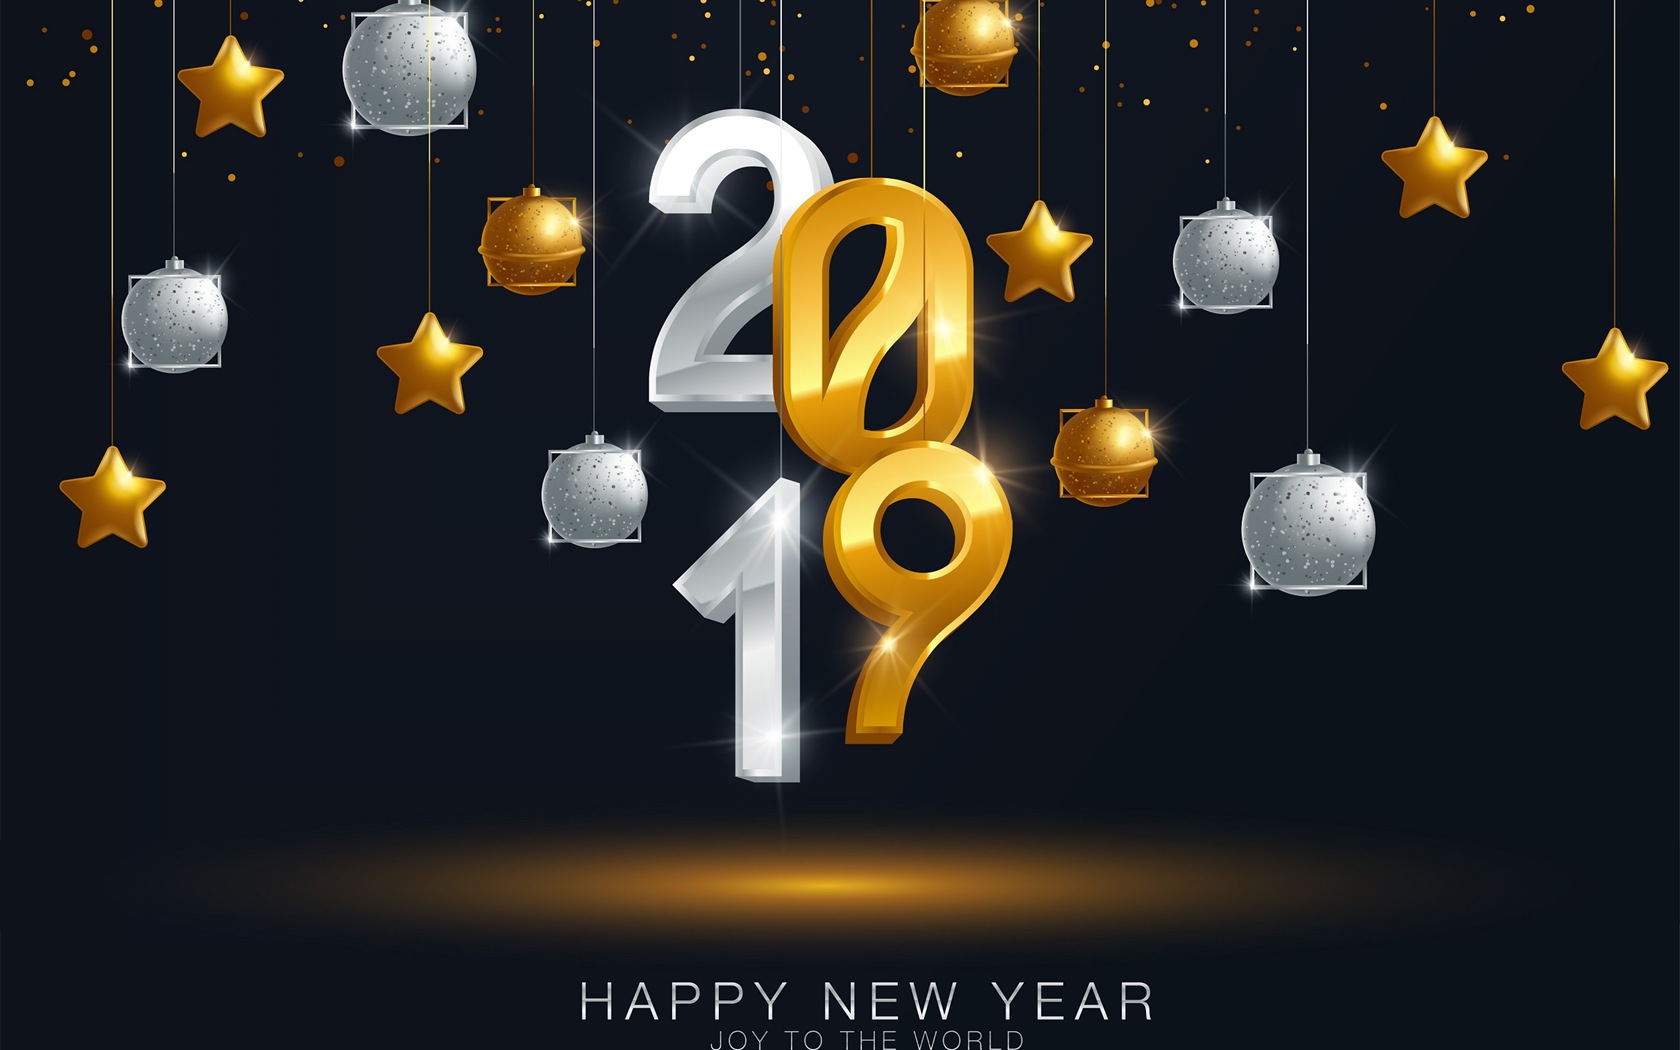 Feliz año nuevo 2019 HD wallpapers #12 - 1680x1050